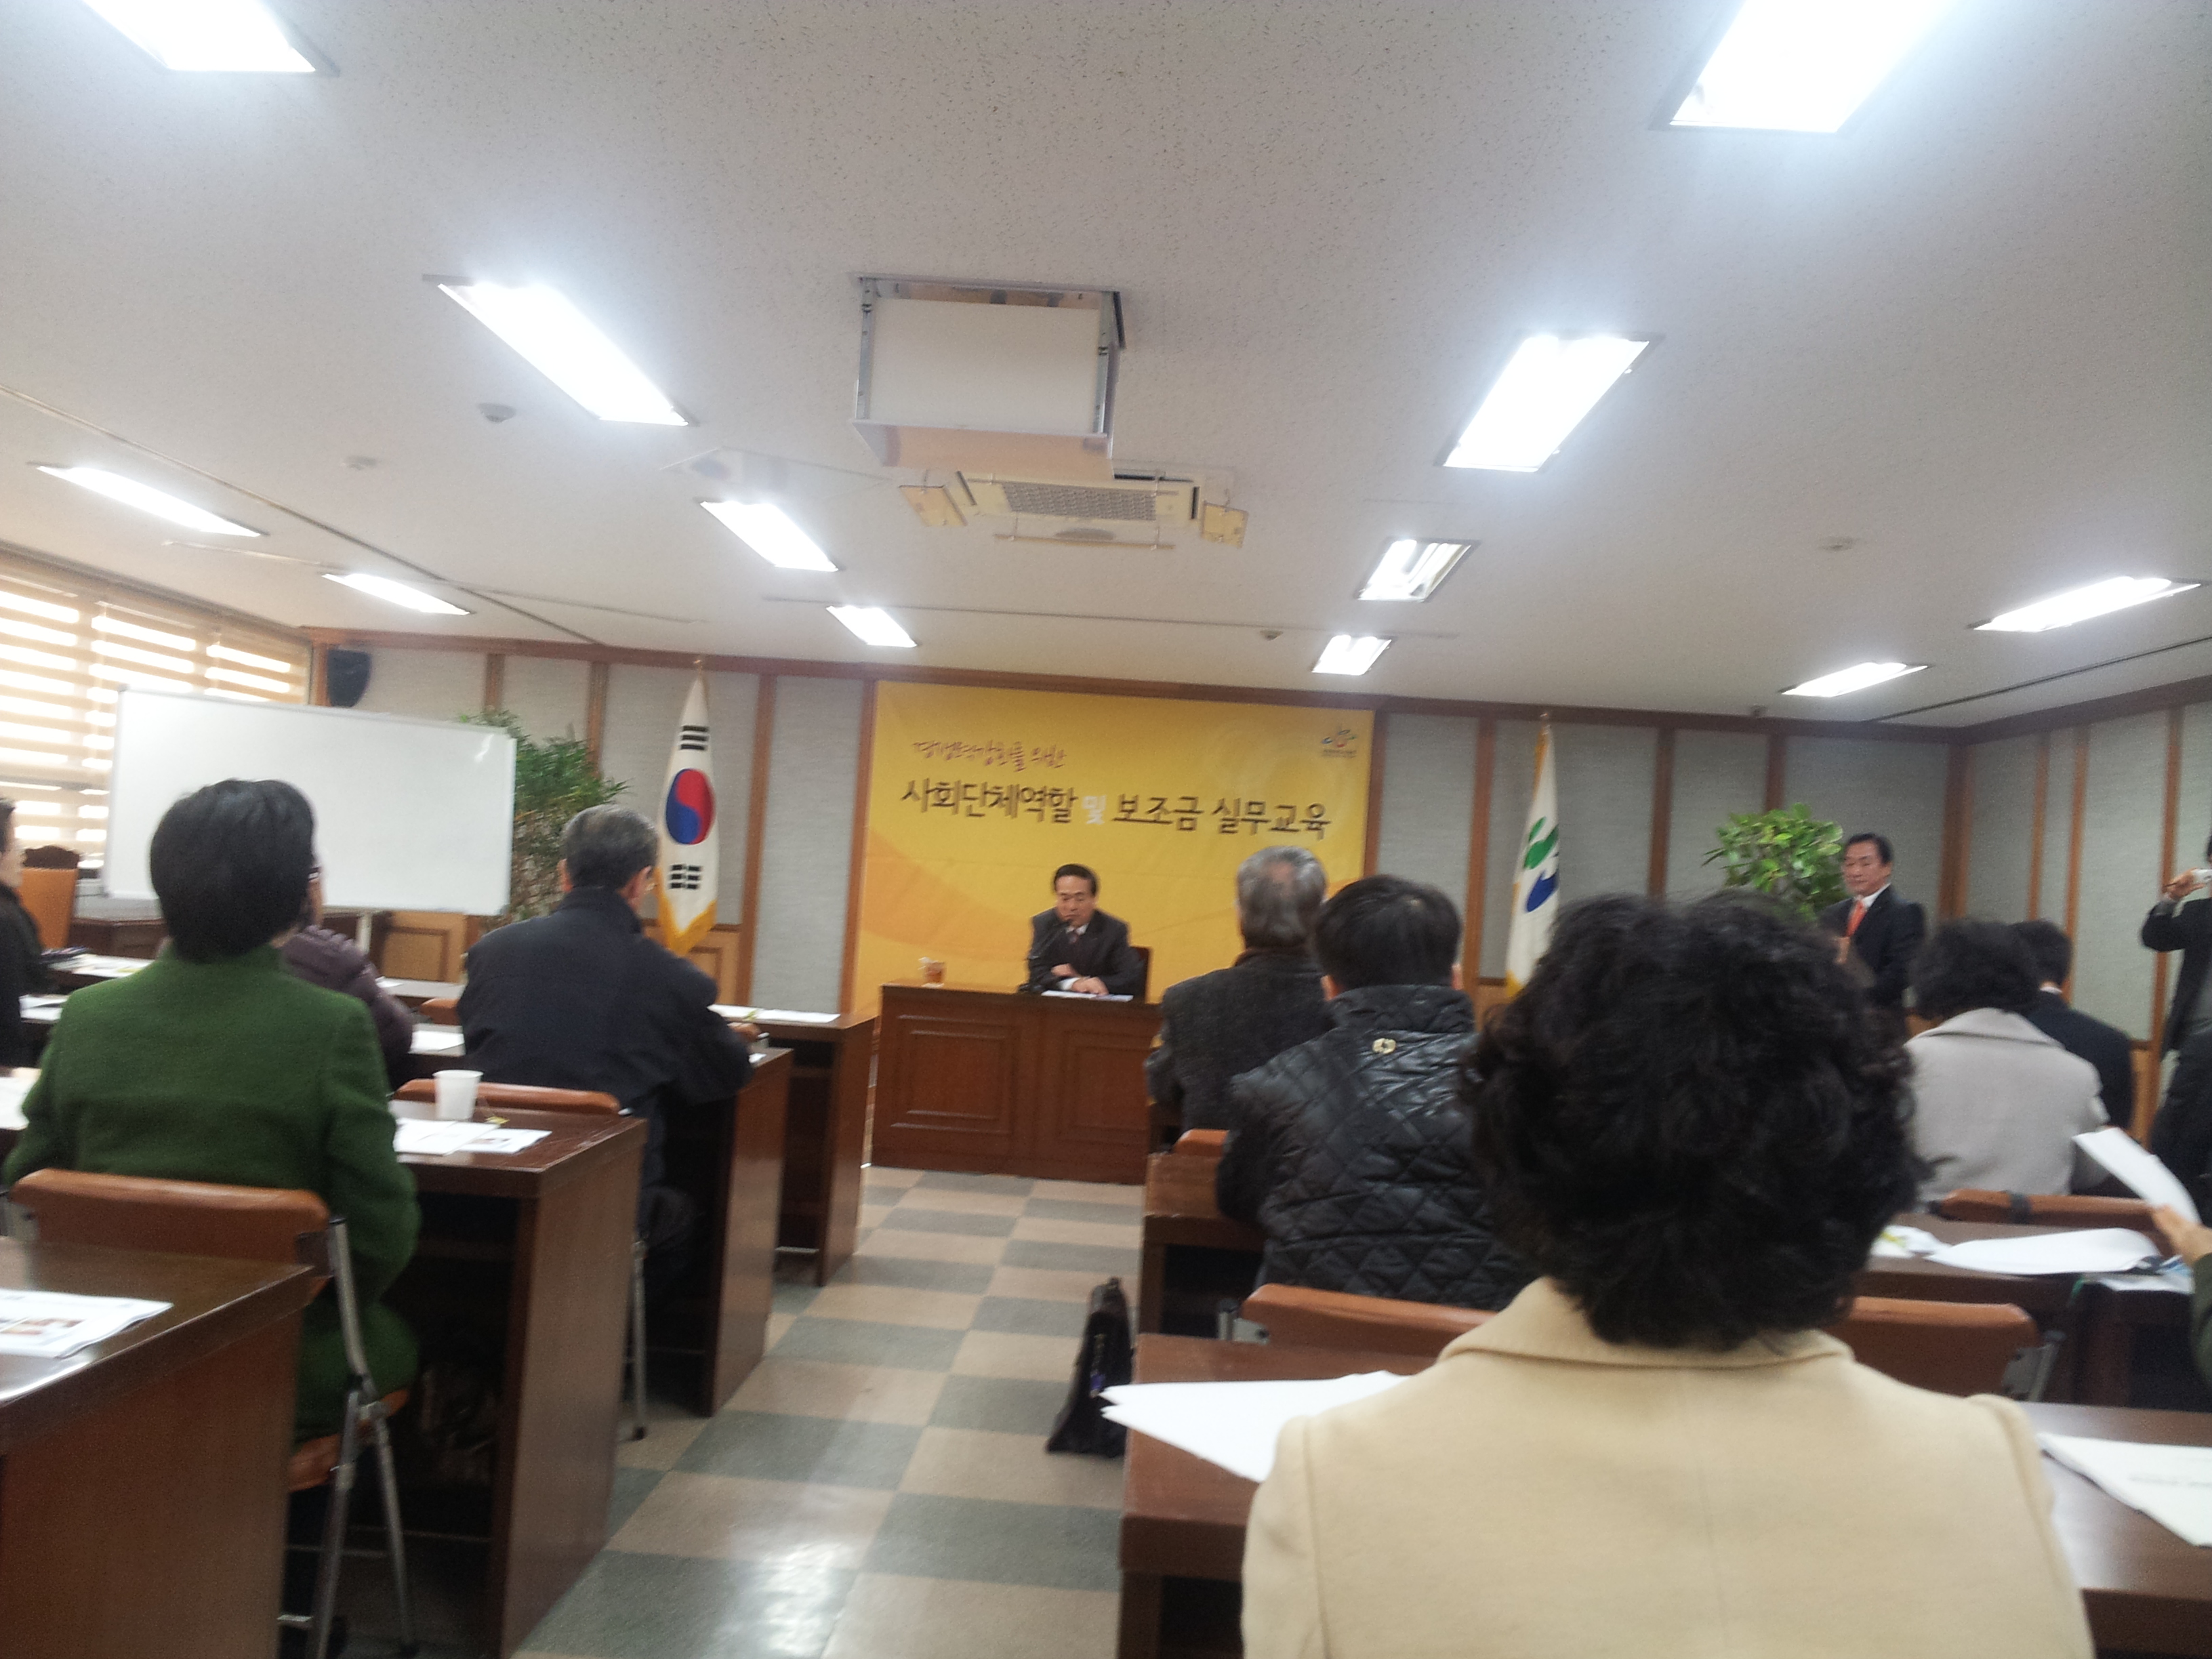 2013 송파구 사회단체보조금 회계교육